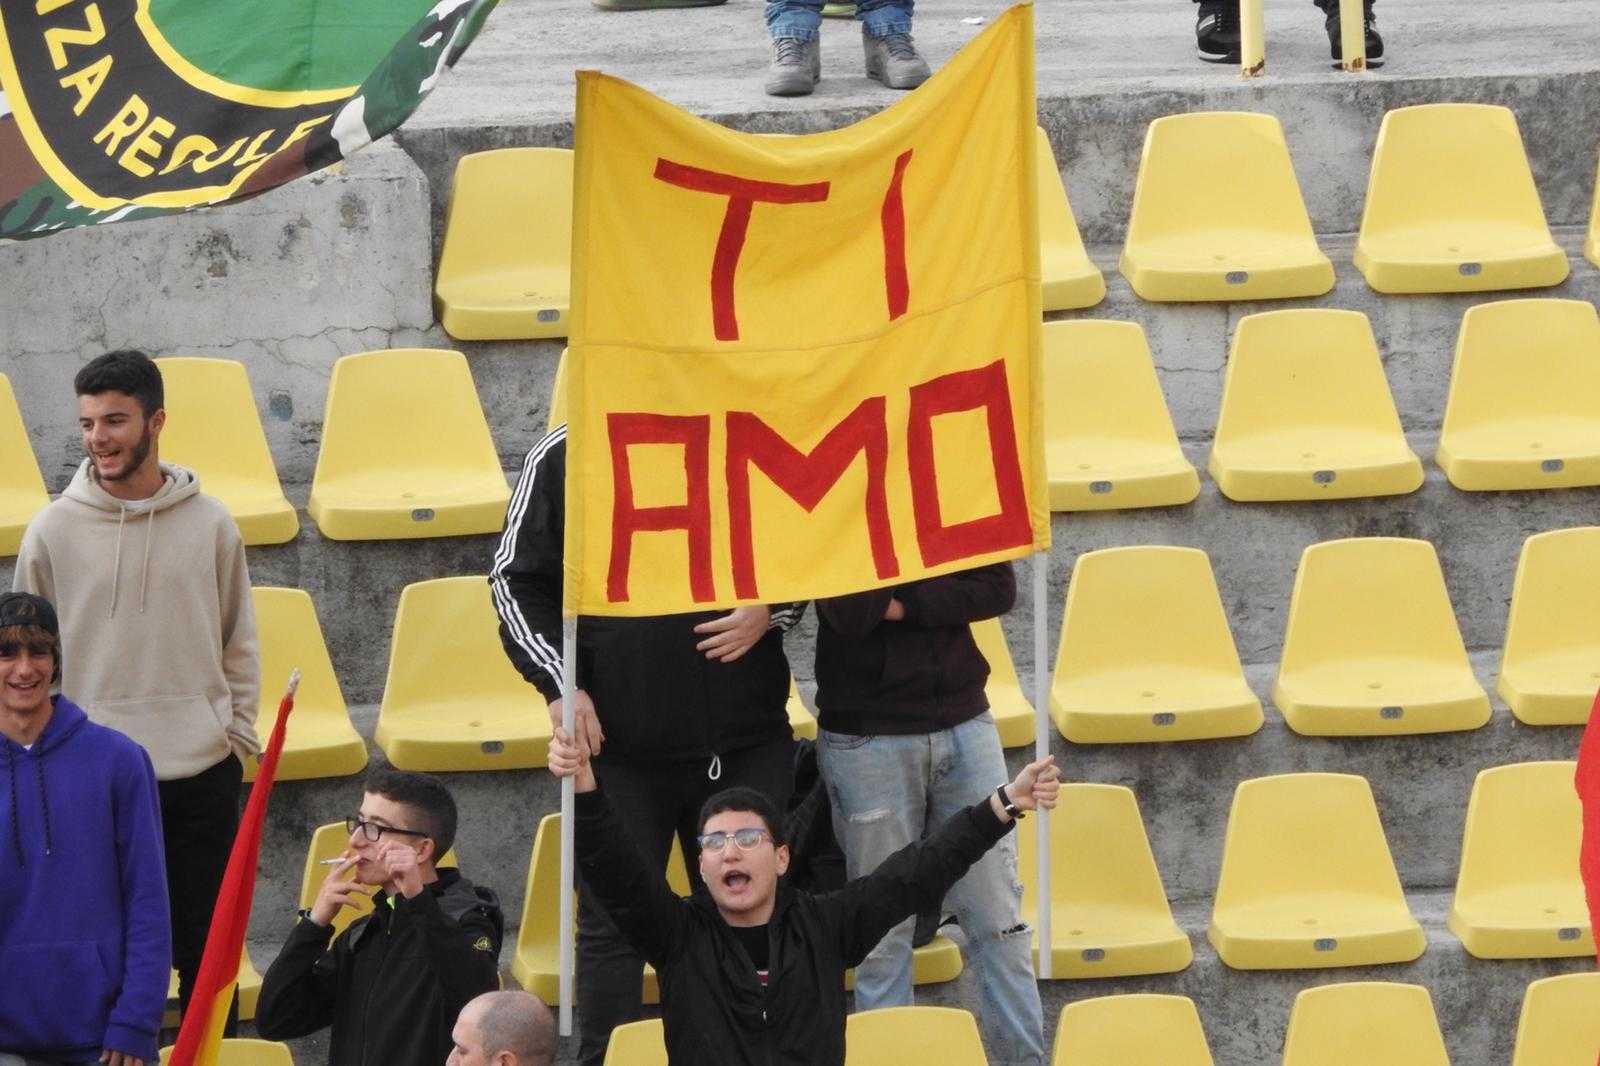 Calcio. Coppa Italia: Catanzaro Monopoli 2-0. Fischnaller e Giannone (corner) spingono i giallorossi